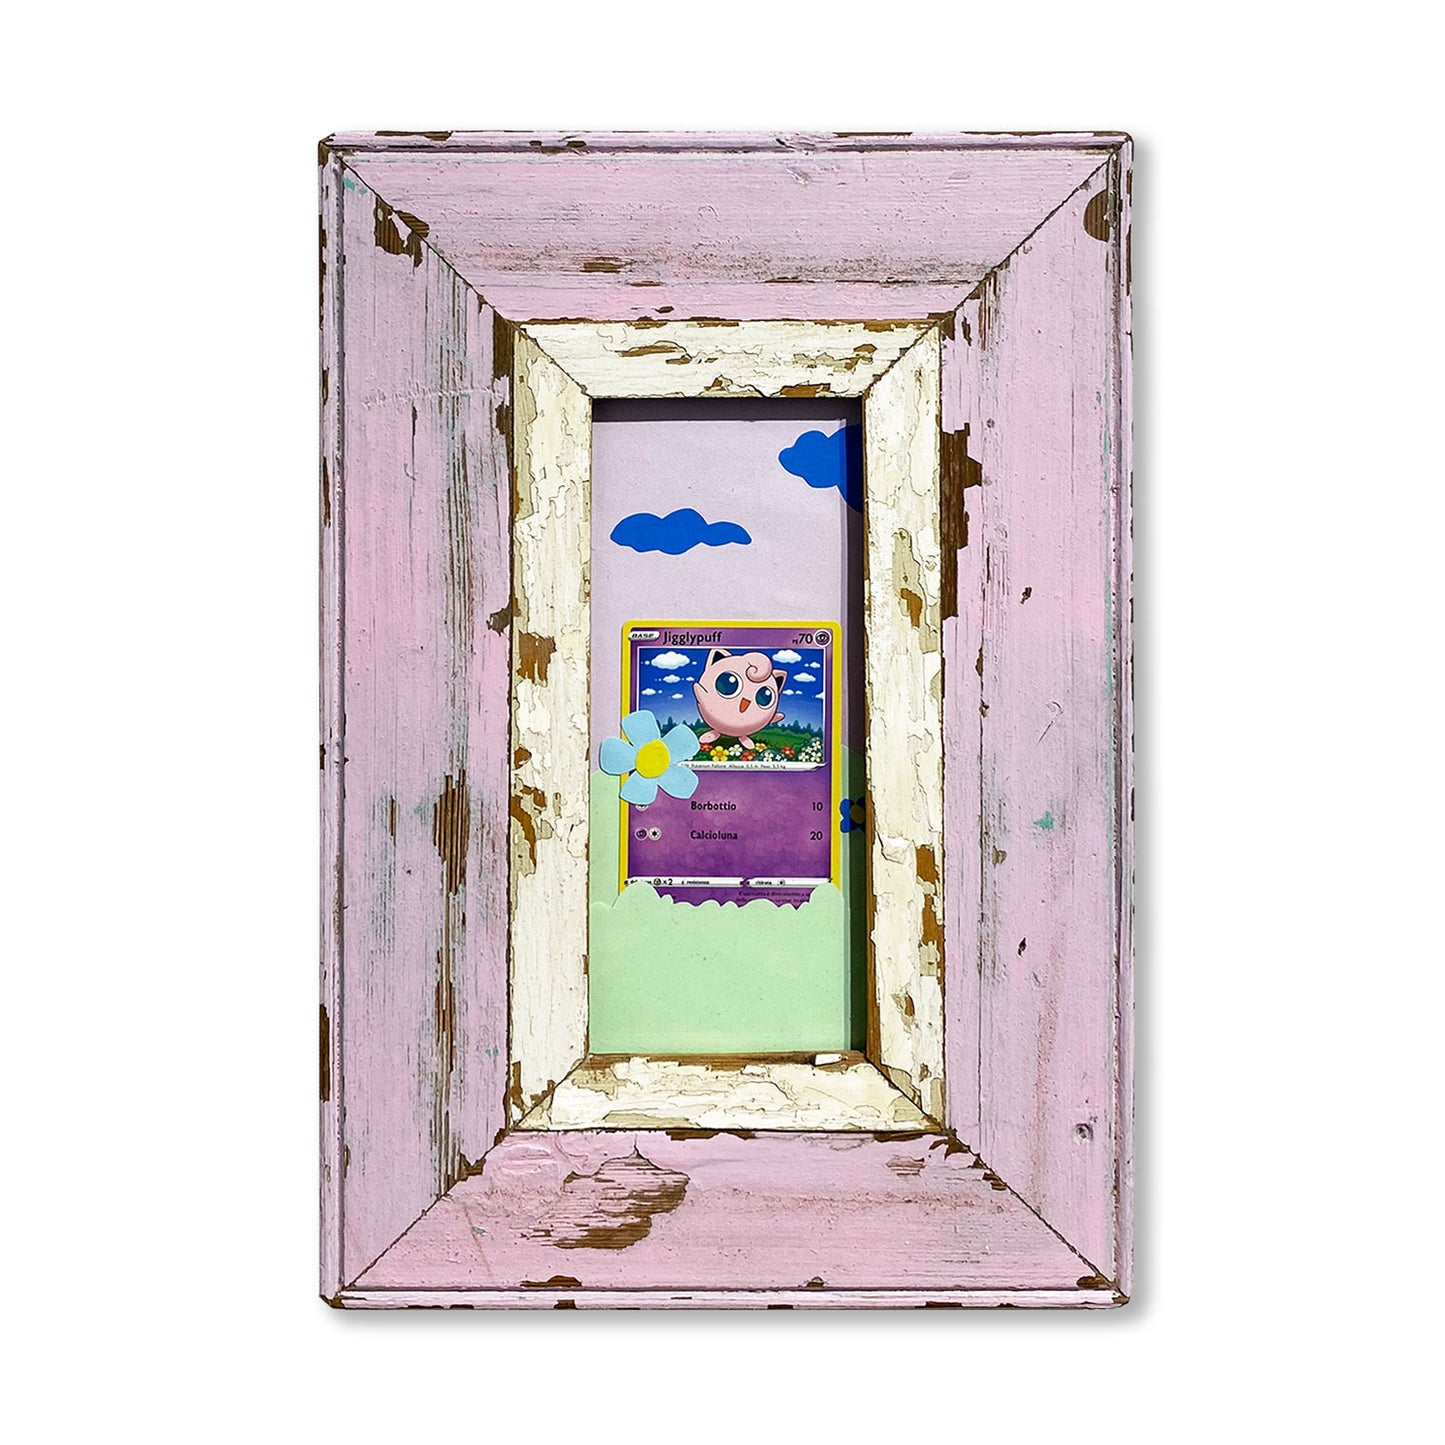 Carta pokemon in cornice decorativa per arredare le tue pareti